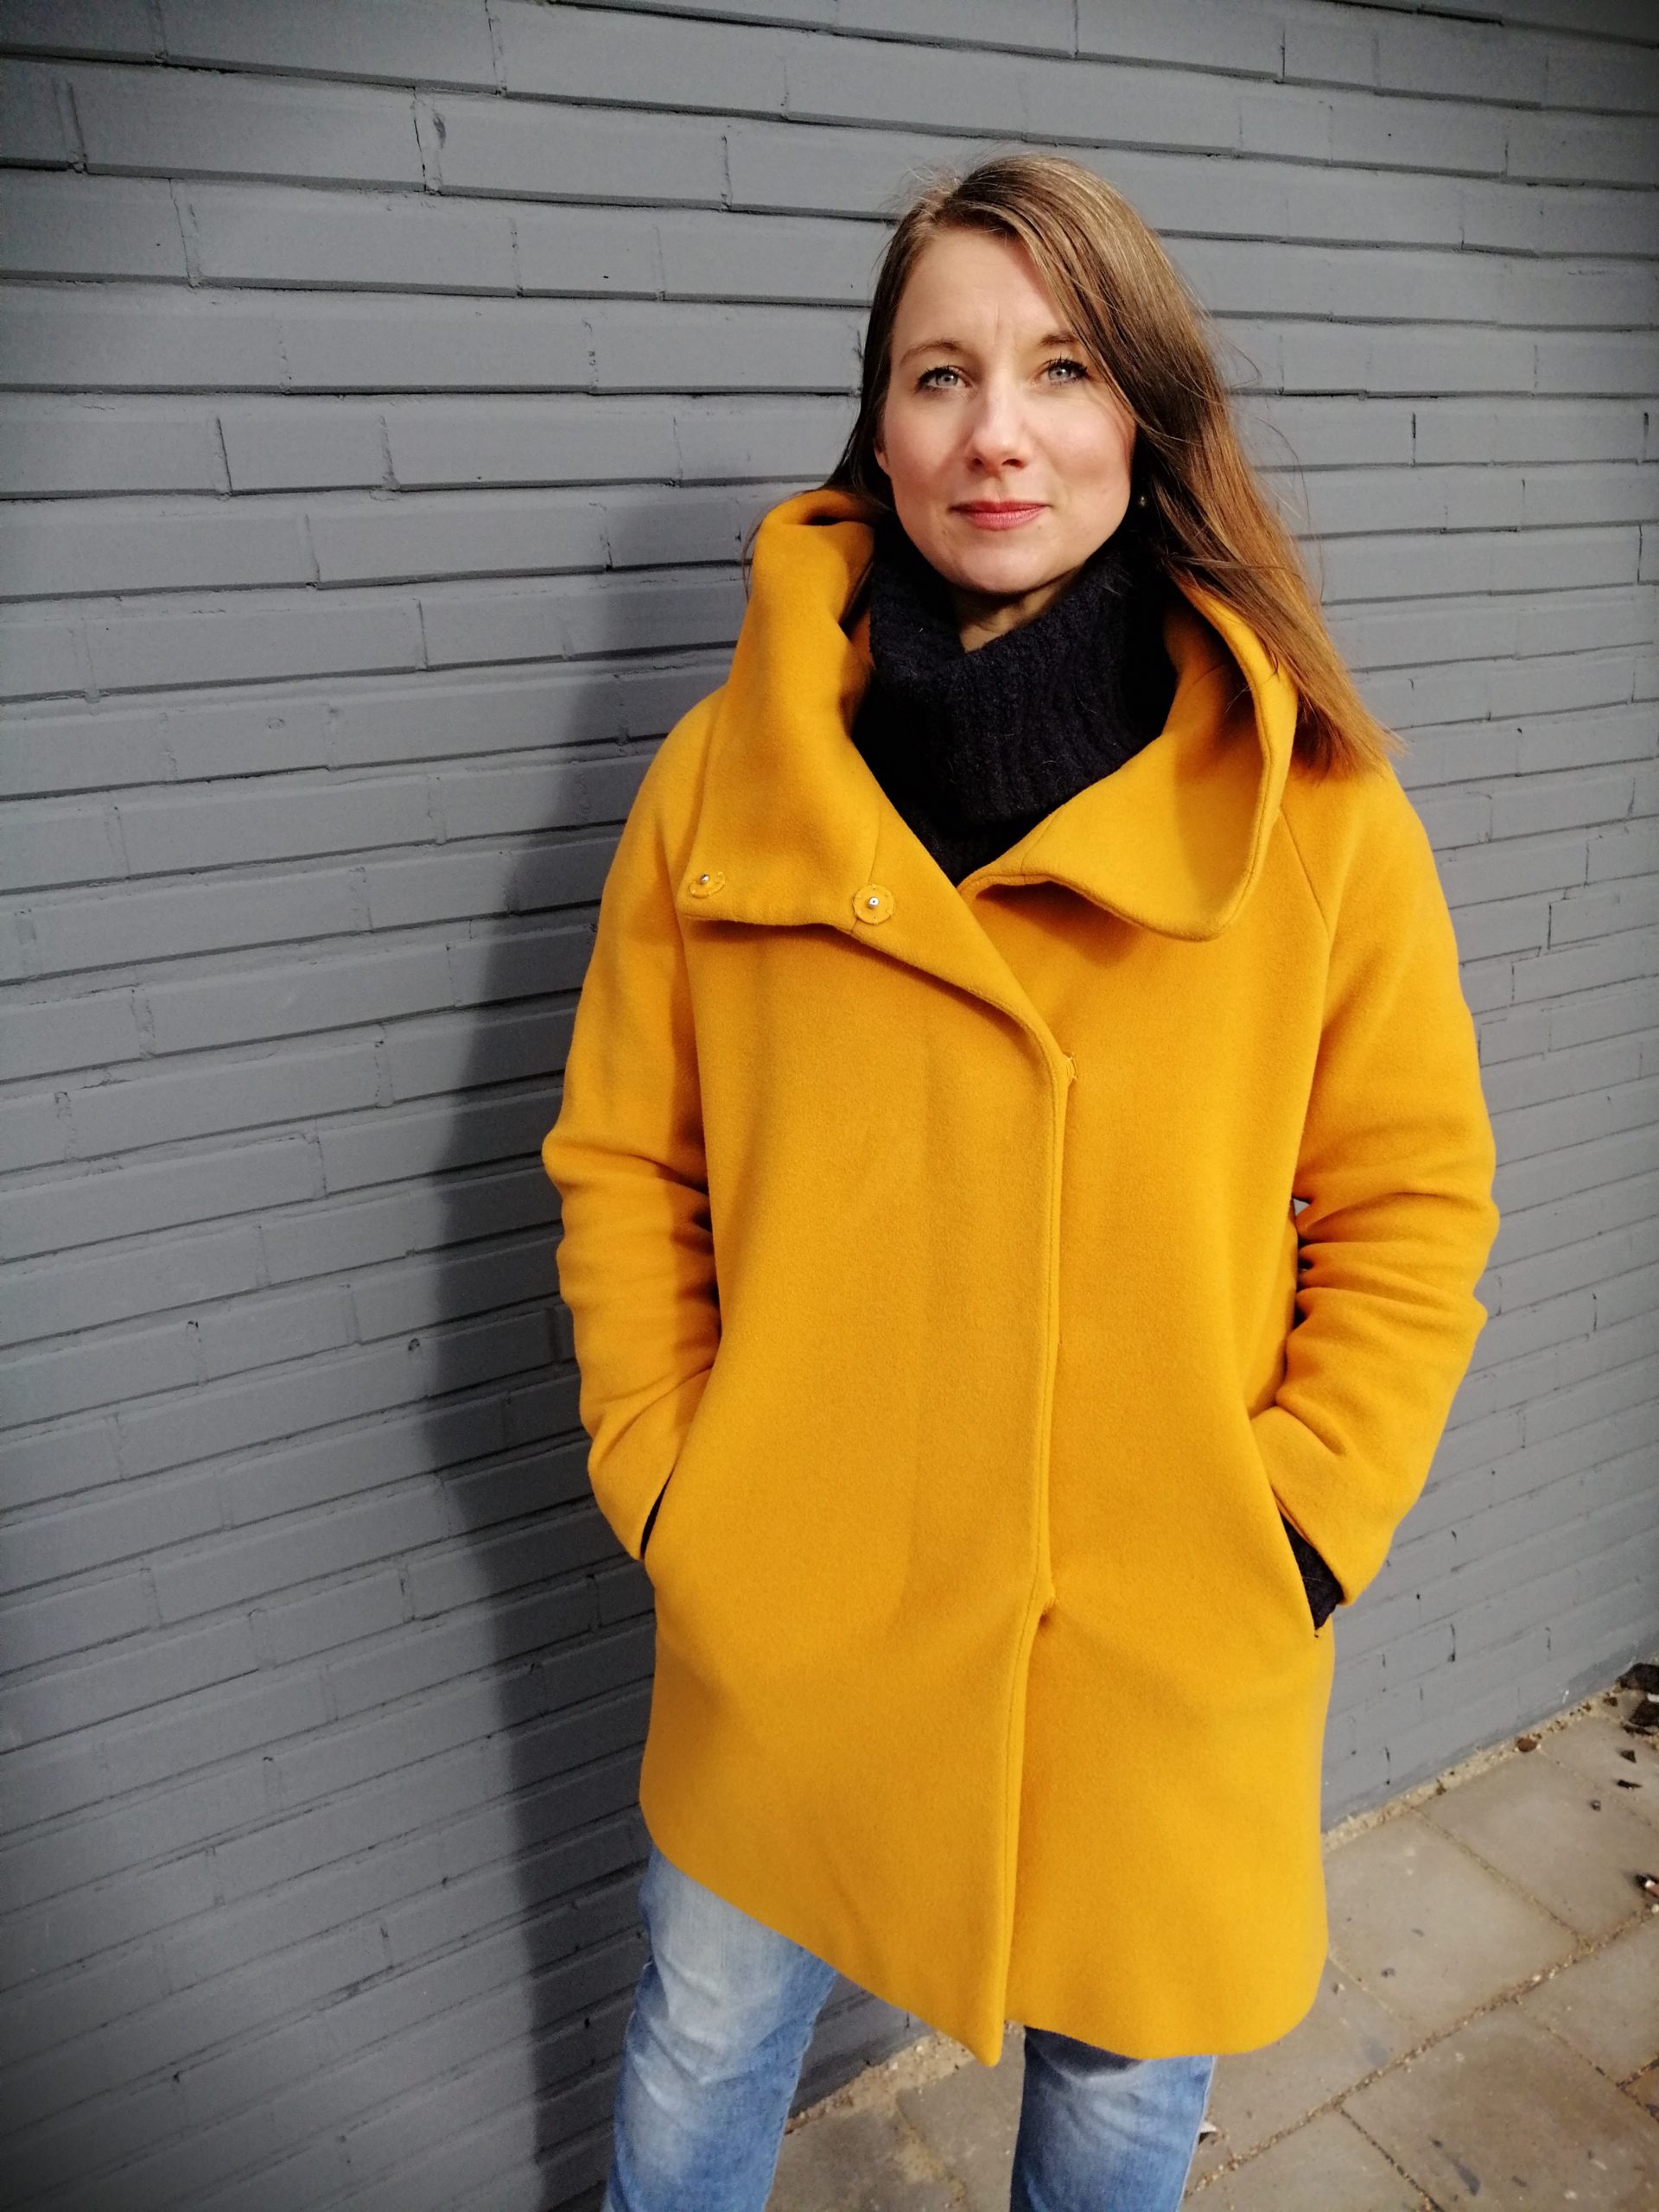 Mirja steht mit einem gelben Mantel vor einer grauen Wand.